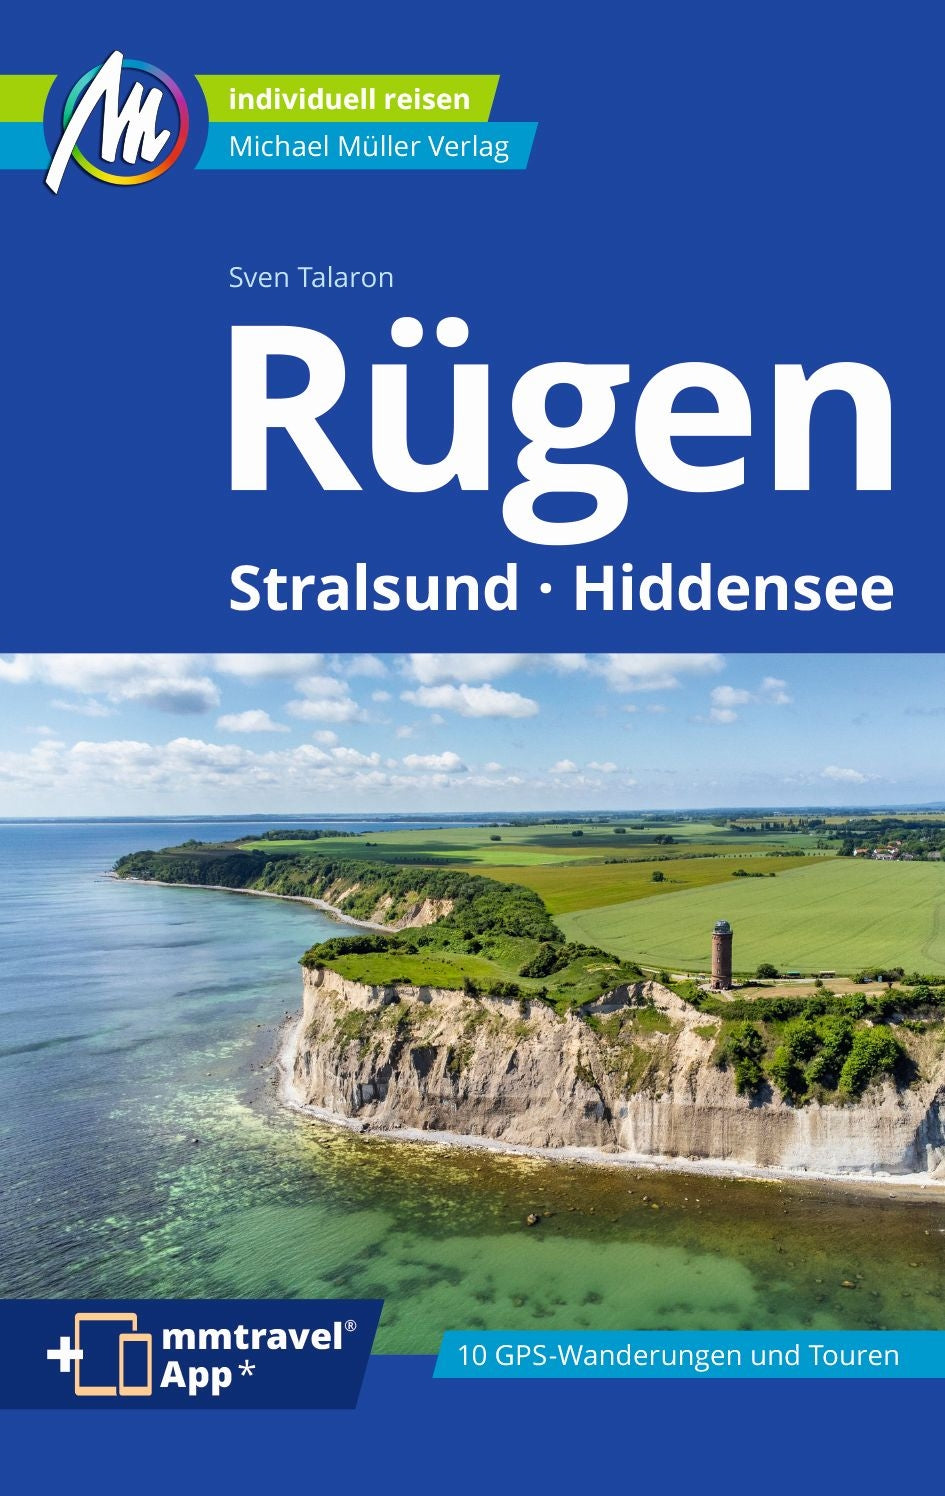 Rügen - Hiddensee, Stralsund - Michael Müller